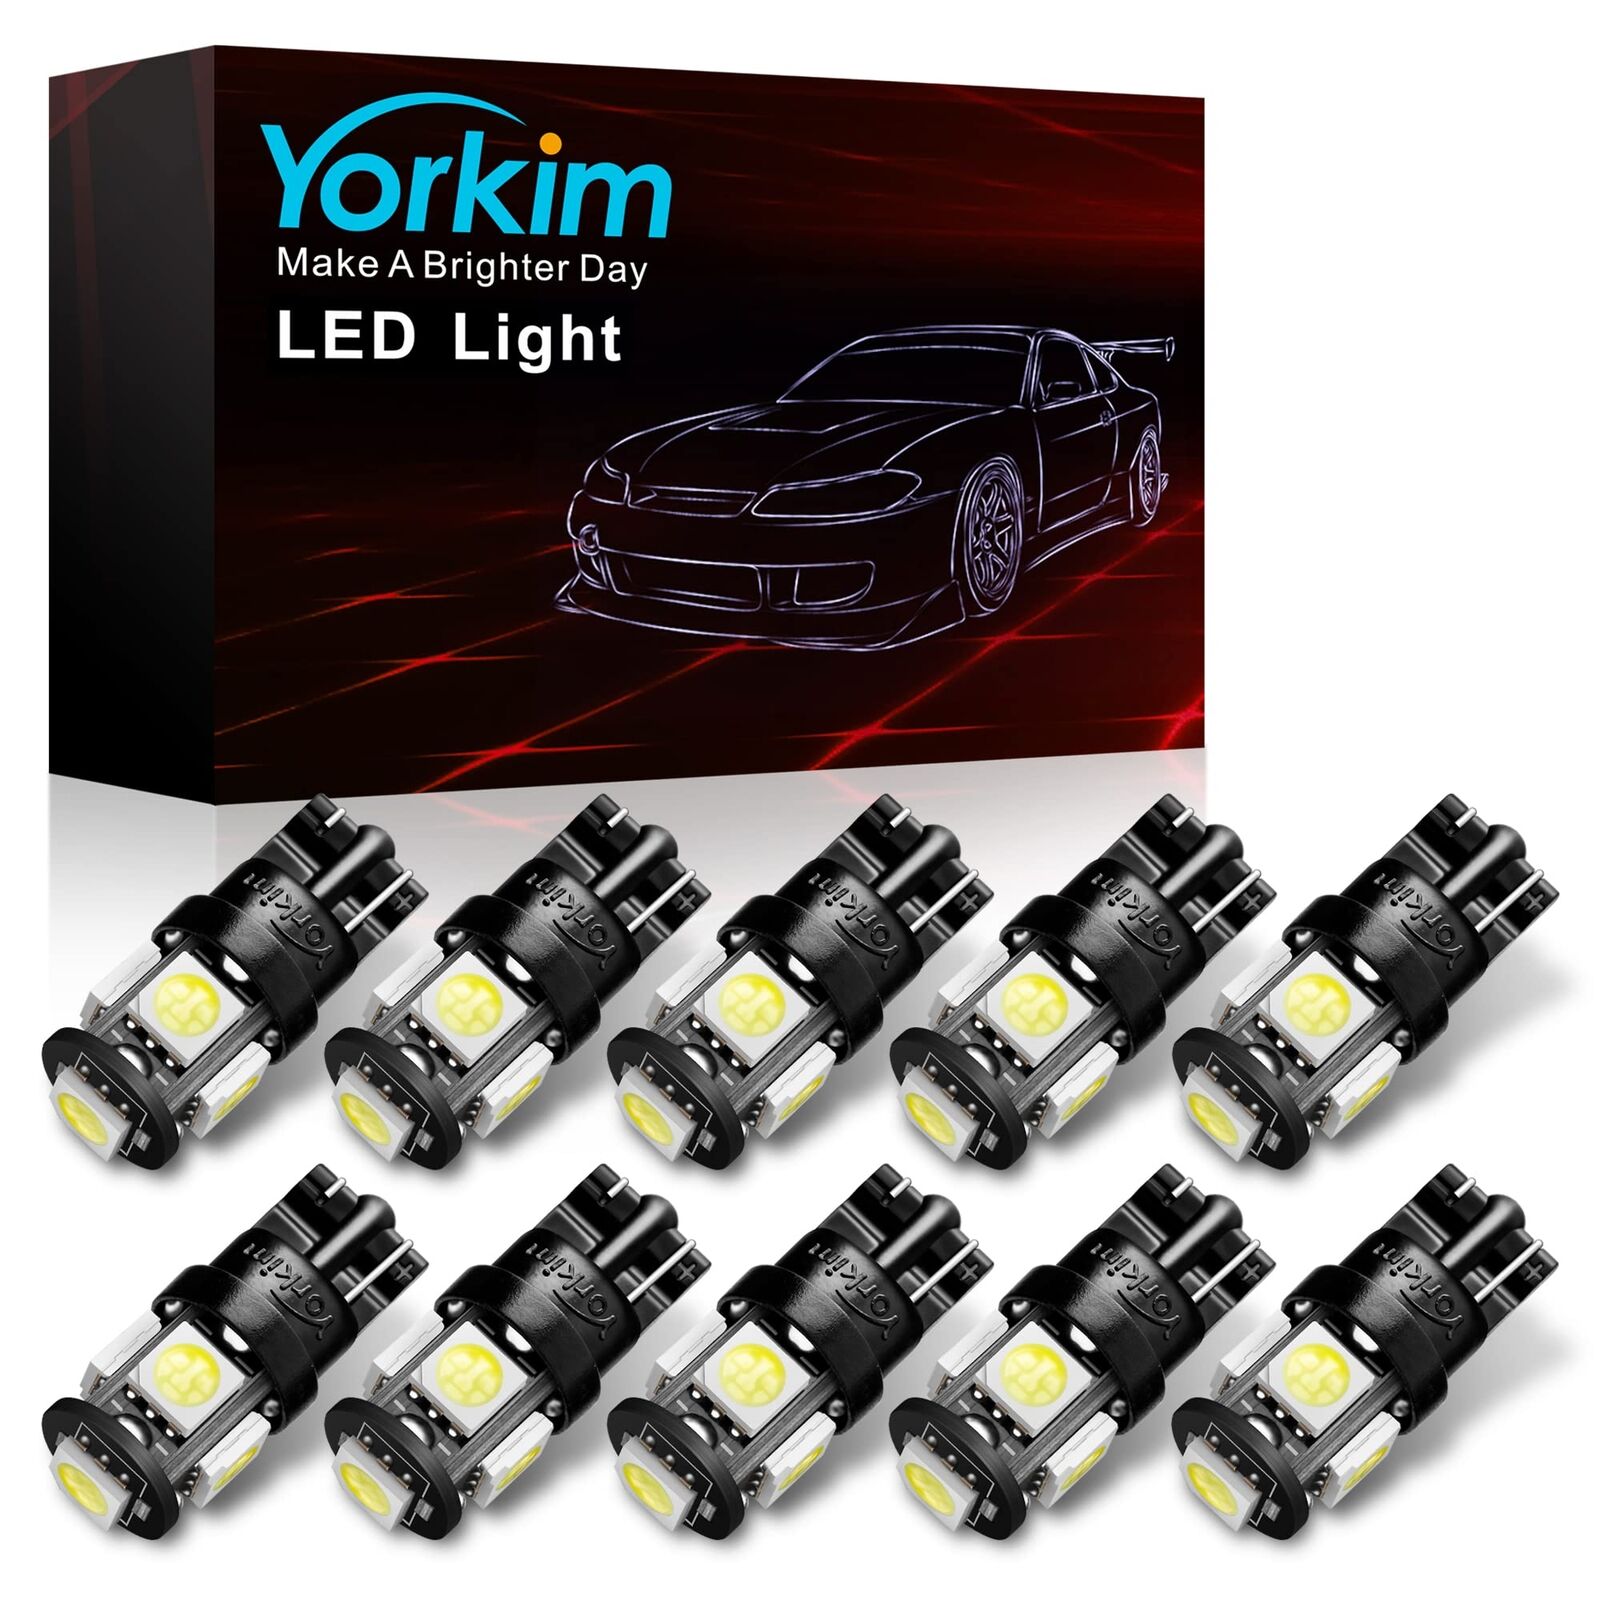 Yorkim 194 LED Bulbs White 6000k Super Bright 5th Generation T10 168 LED Bulb...